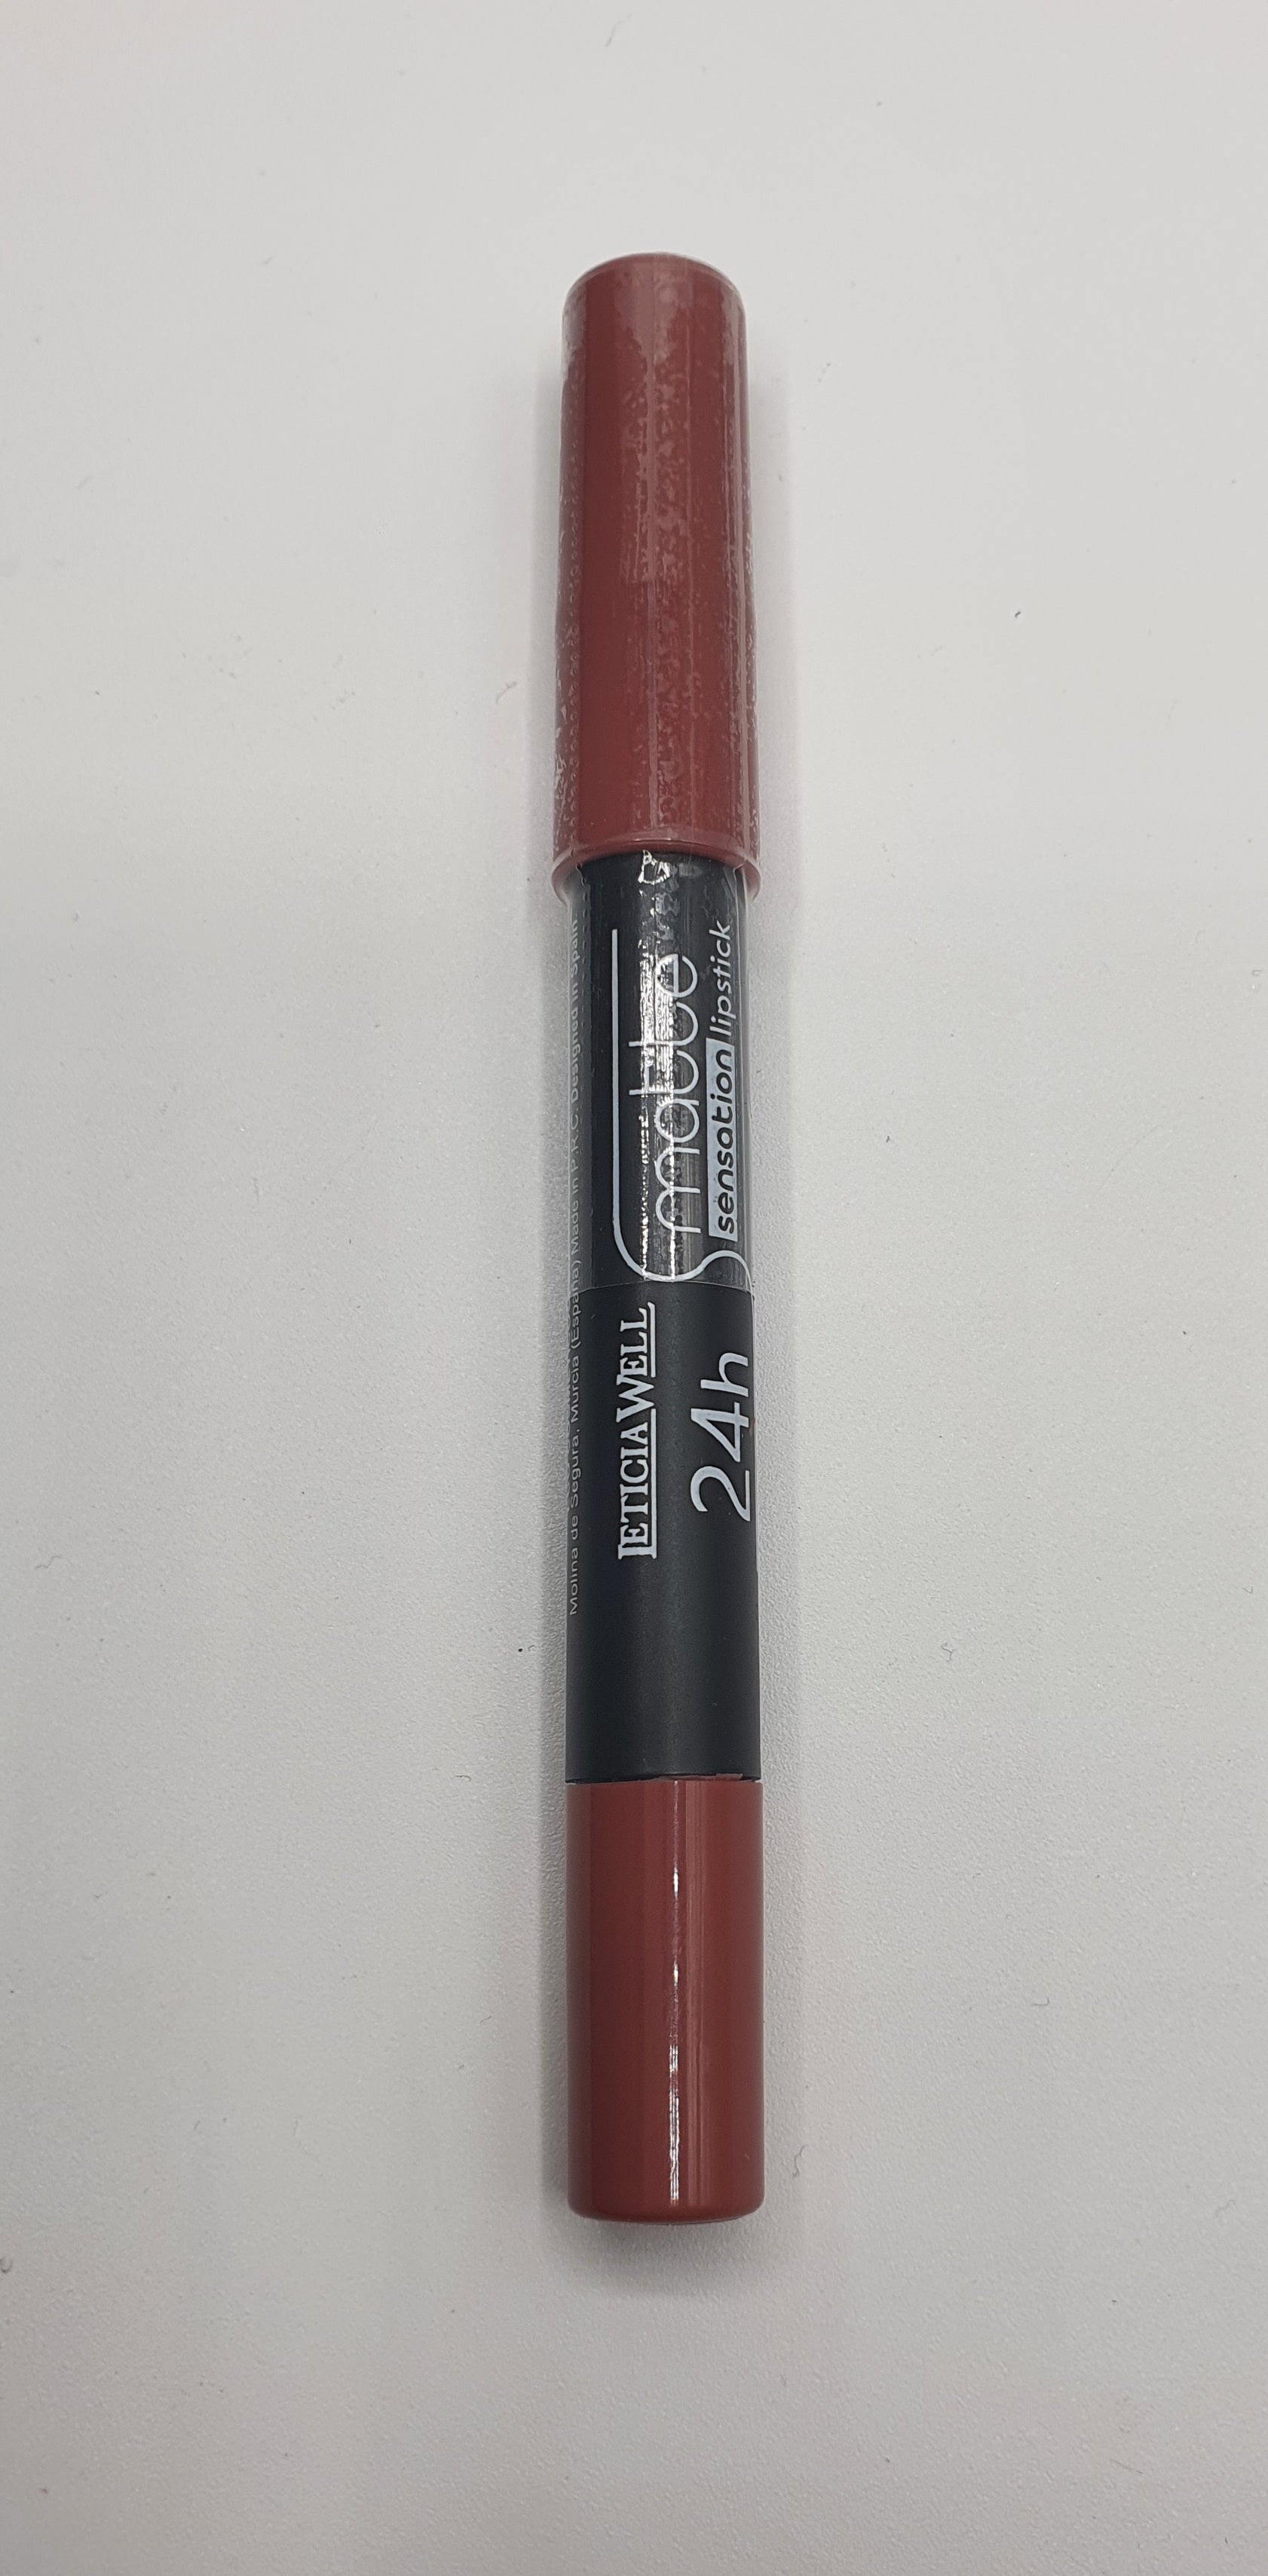 Crayon rouge a lèvres sensation matte 24h ref 11266